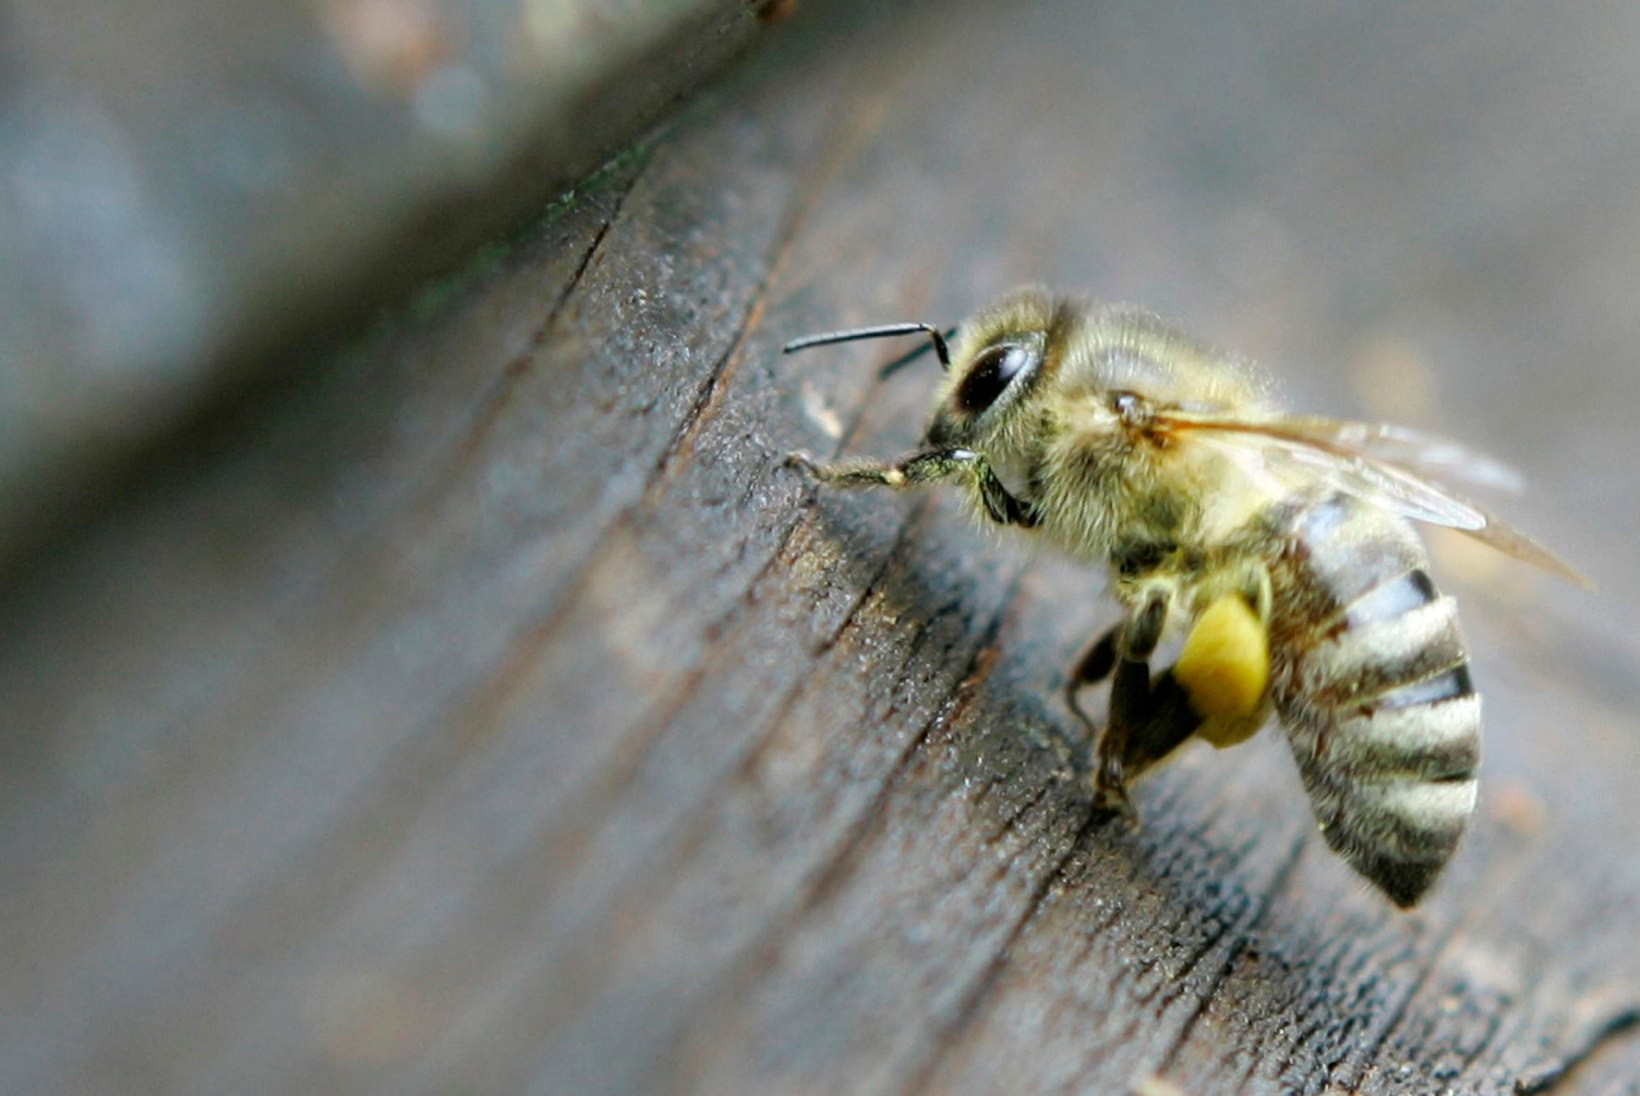 Aasta uurimistöö: kumb on valusam, kas mesilase suts meheausse või ülahuulde?